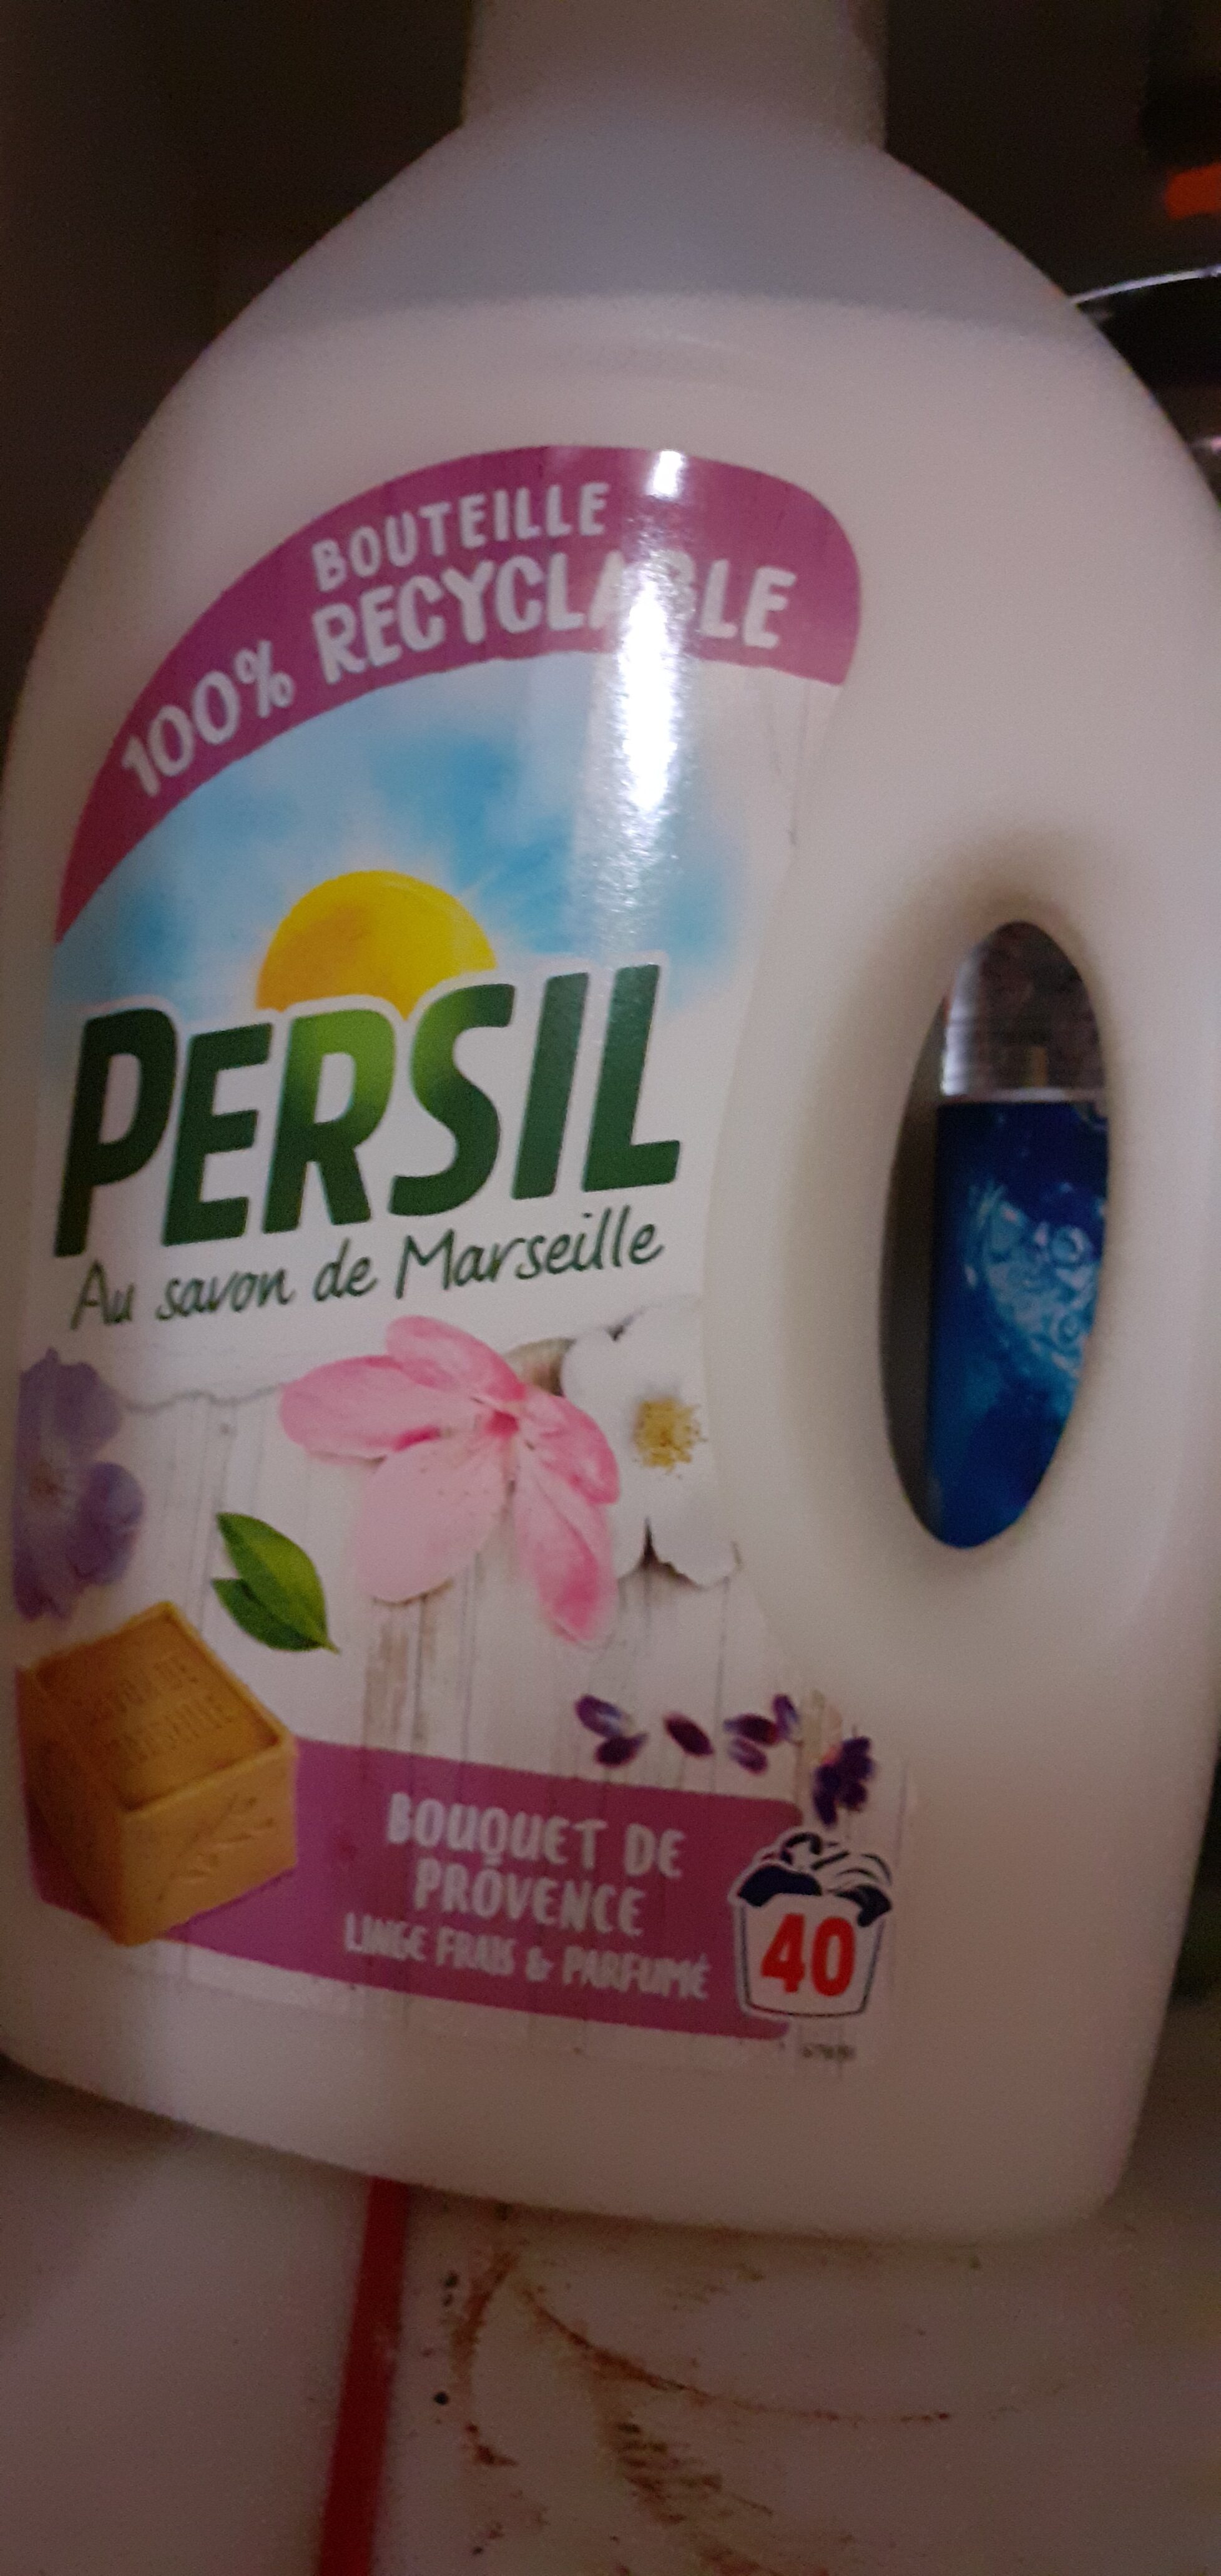 Persil Lessive Liquide au Savon de Marseille Bouquet de Provence 2l 40 Lavages - Product - en